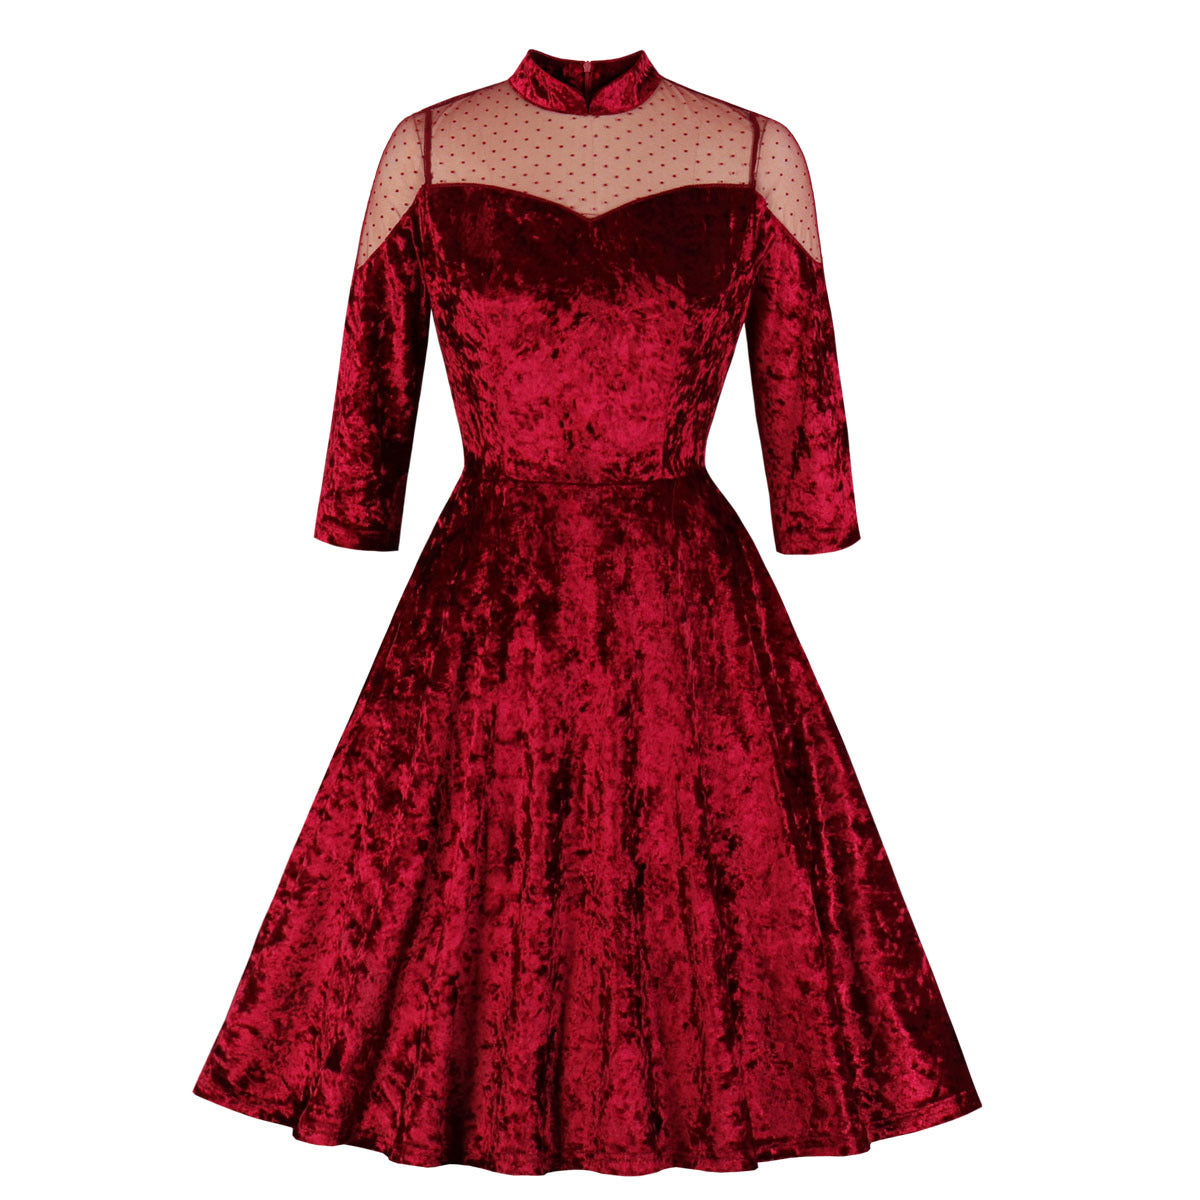 Tonval-robe en velours Vintage, montant en contraste, maille transparente, bordeaux, robe femme en velours, soirée de soirée élégante, automne hiver